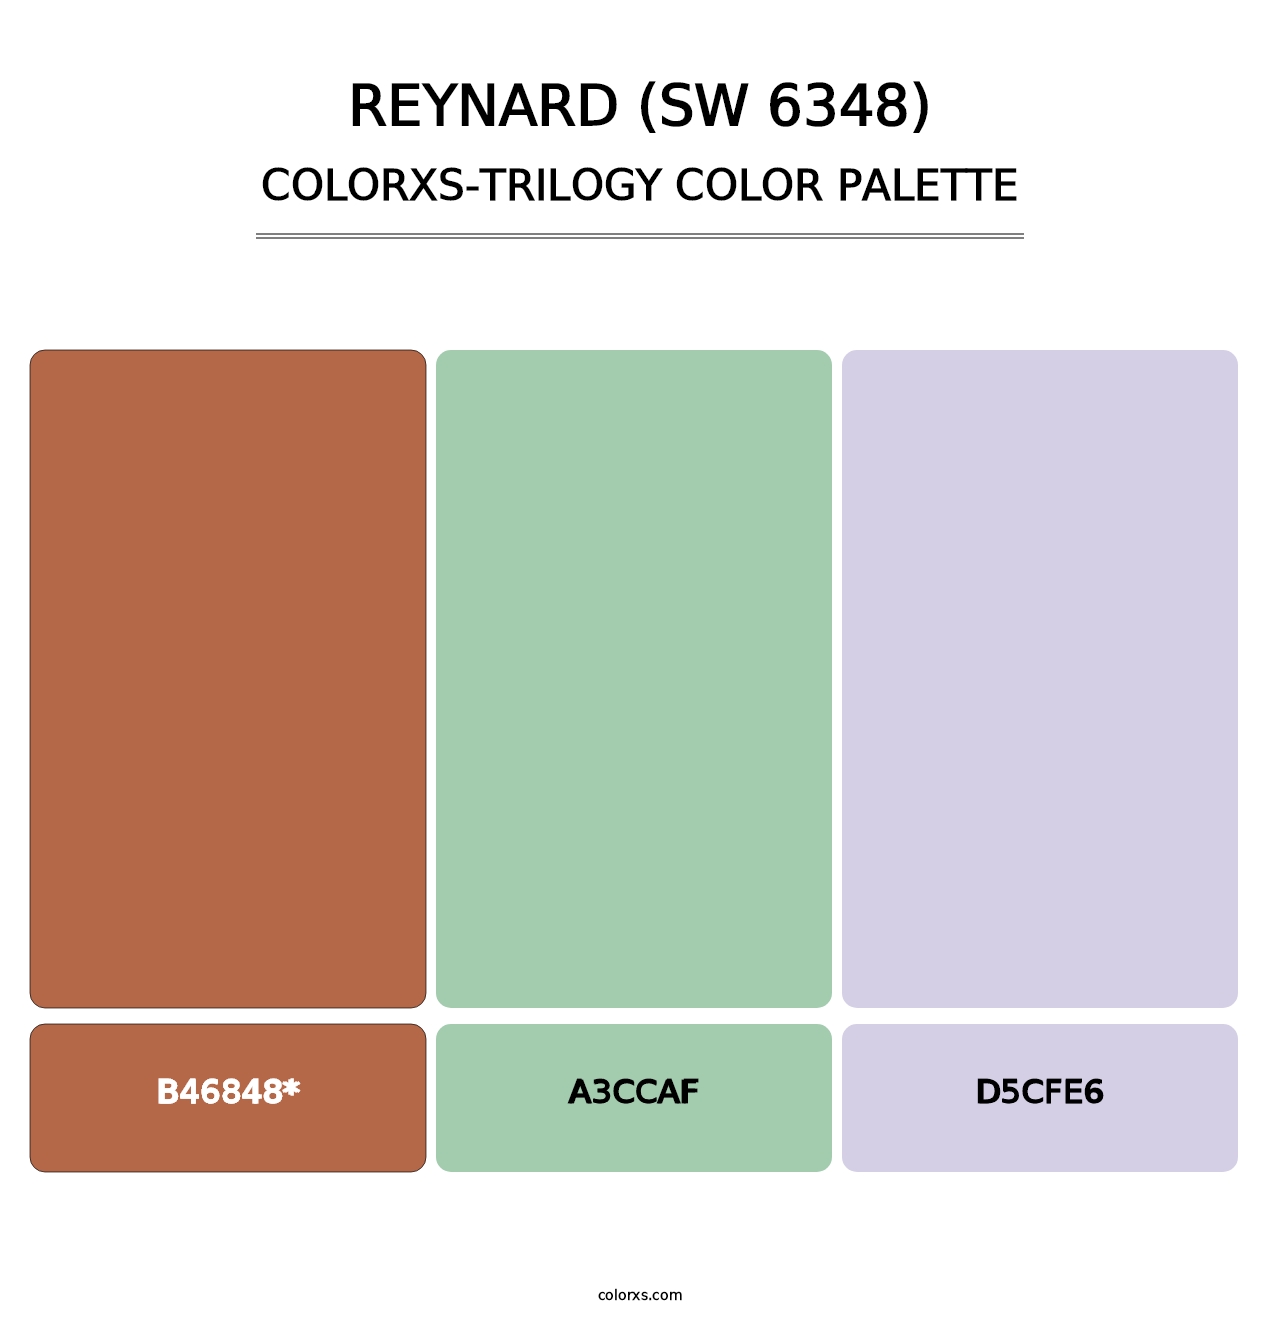 Reynard (SW 6348) - Colorxs Trilogy Palette